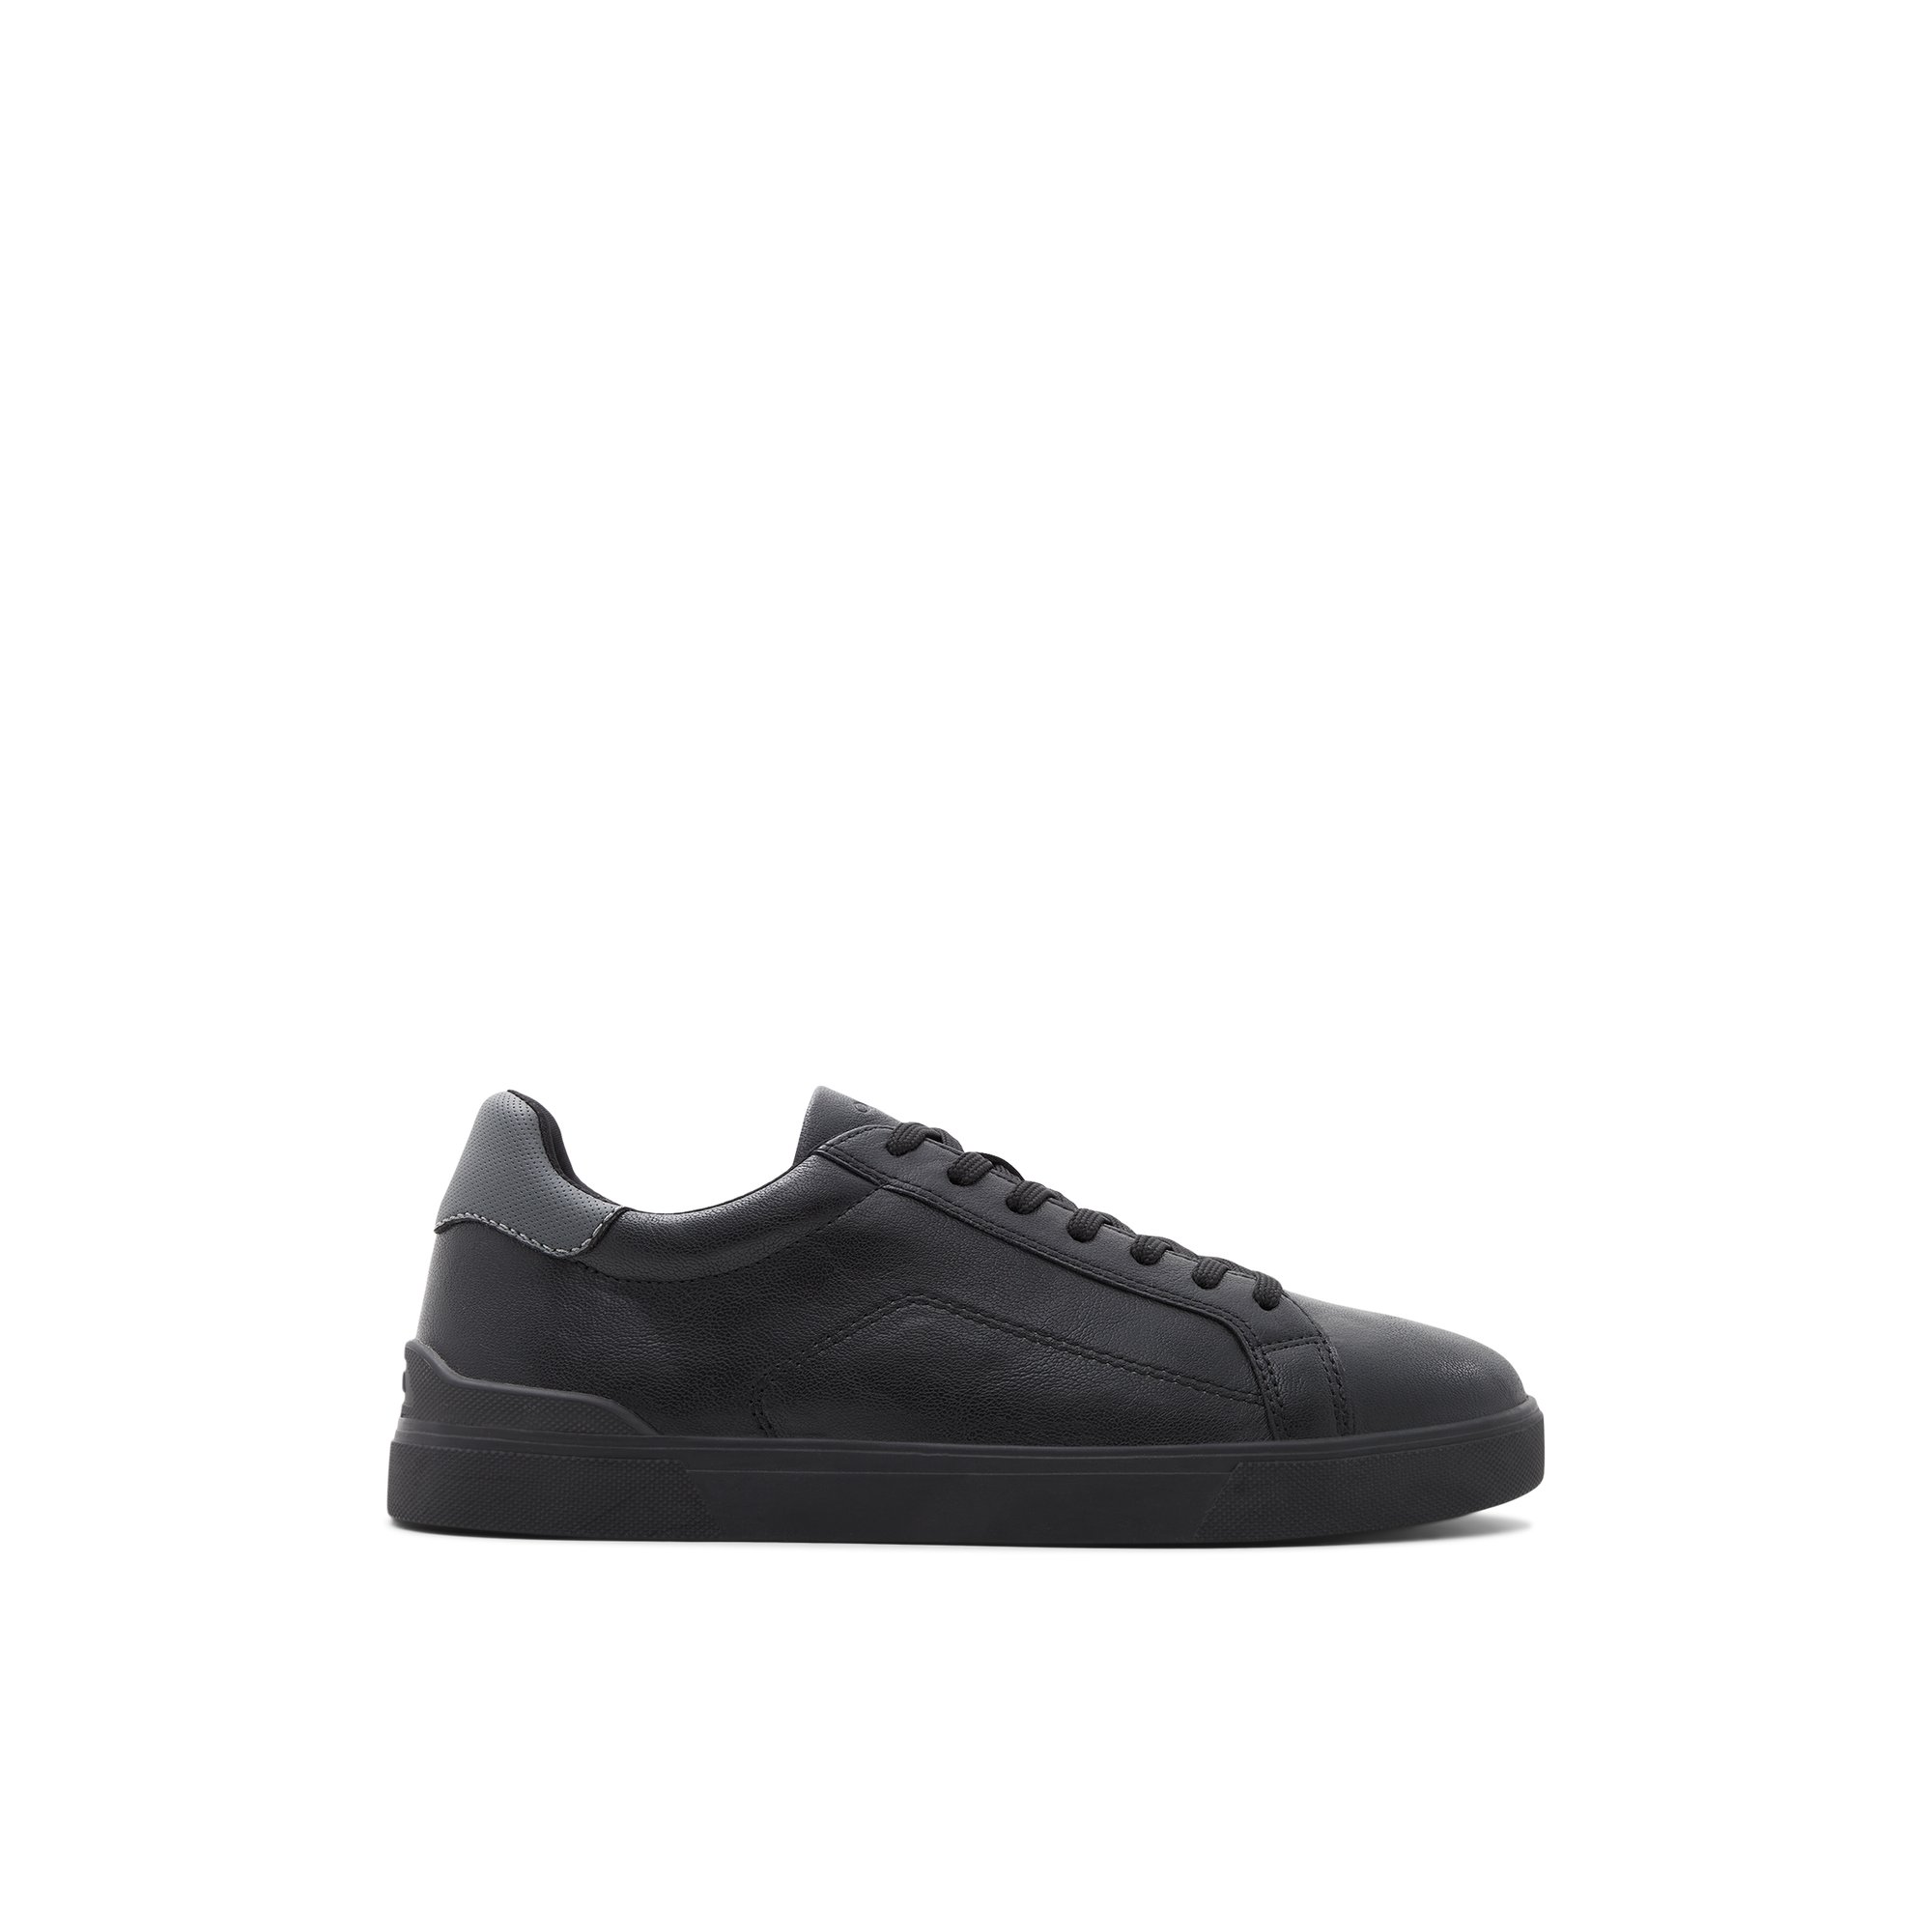 ALDO Introspec - Men's Sneaker - Black